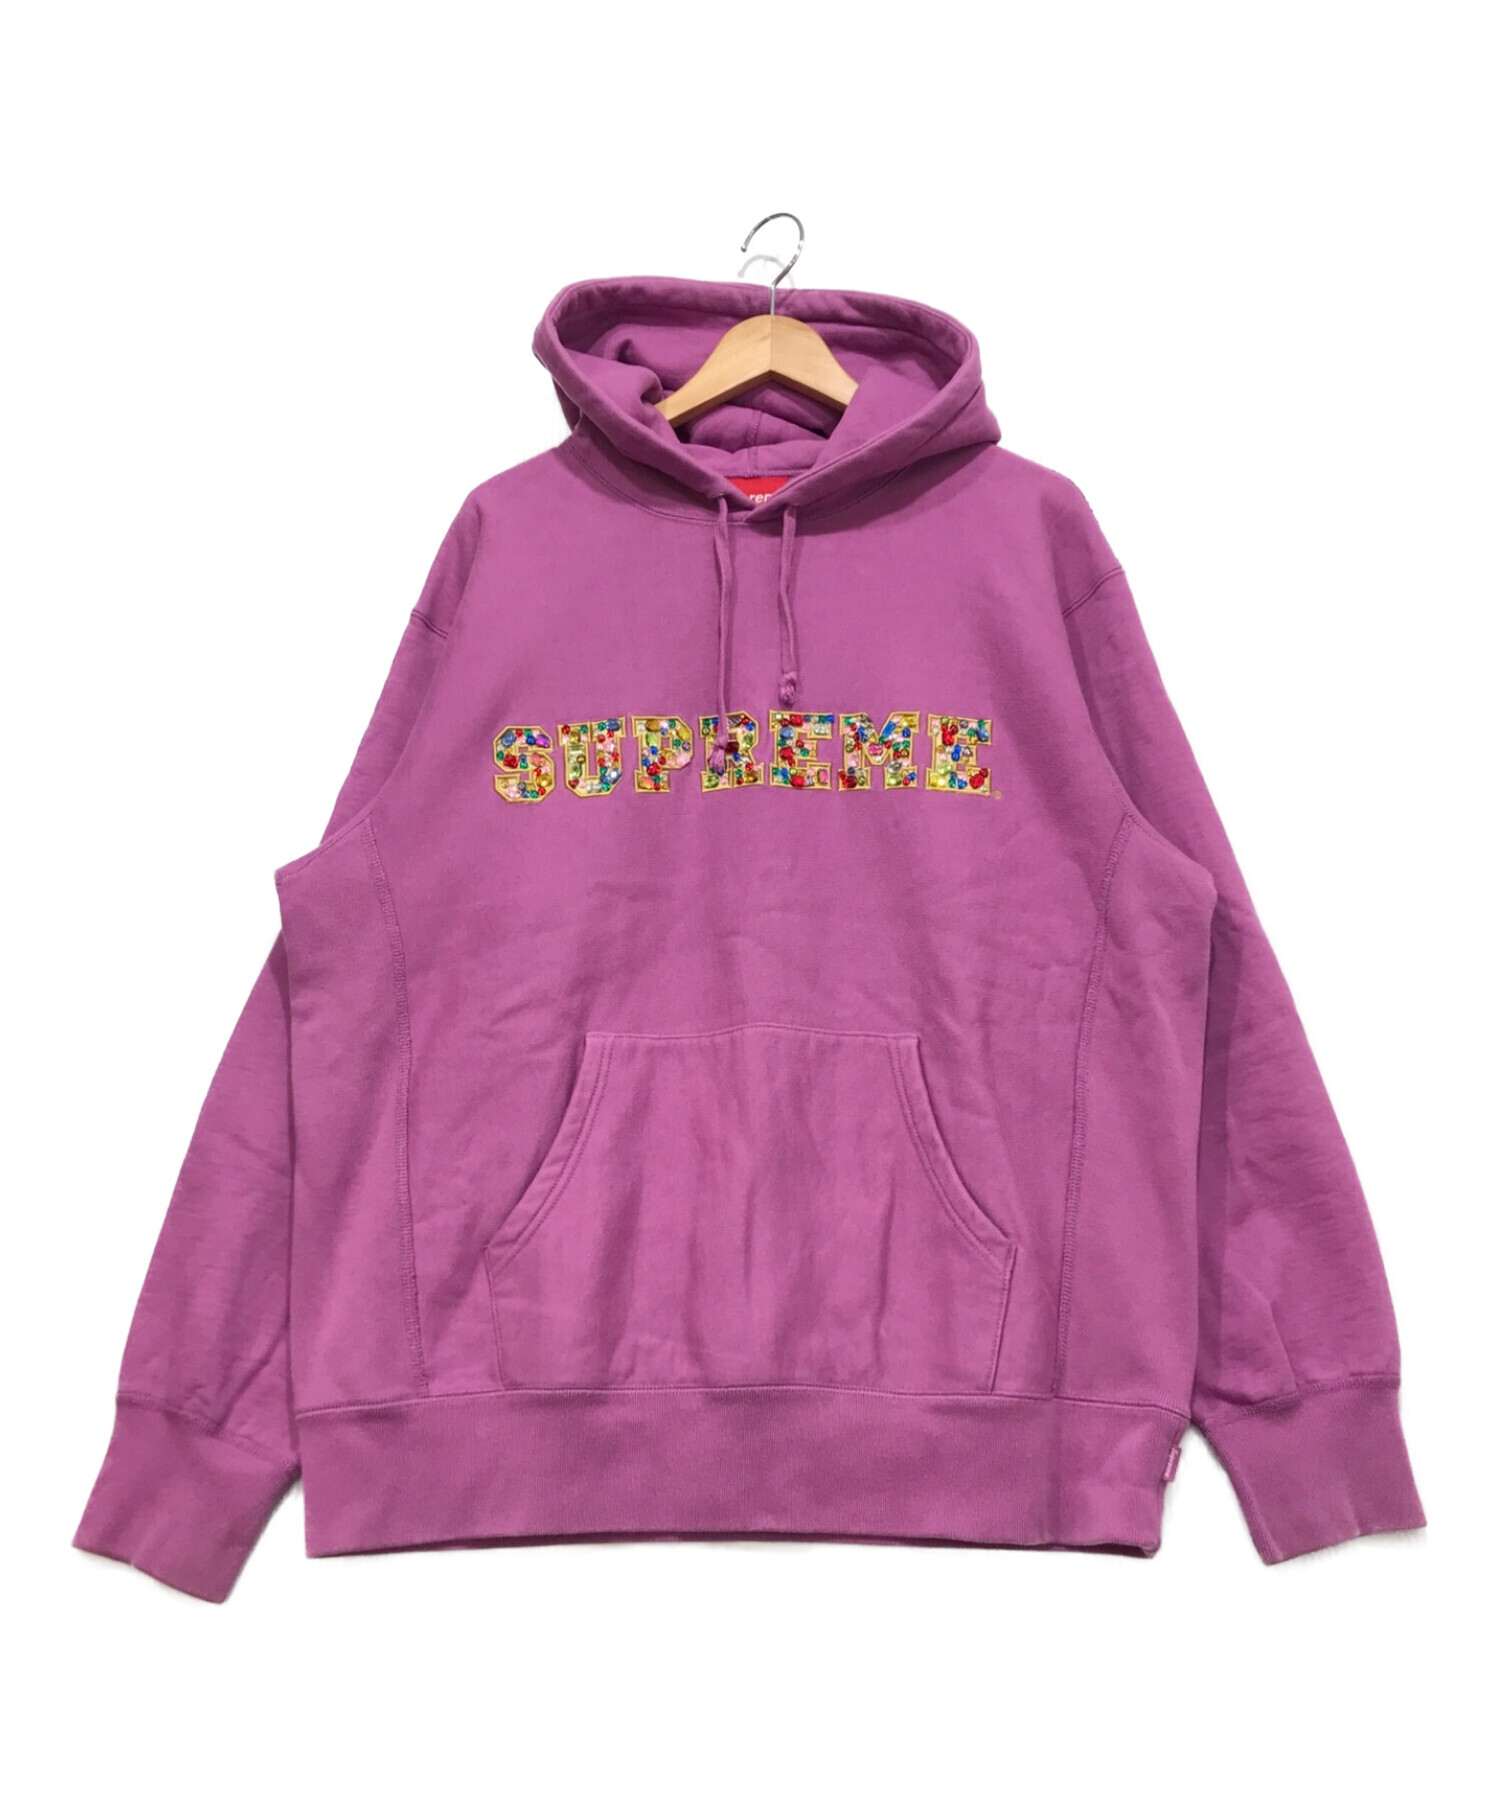 SUPREME (シュプリーム) Jewels Hooded Sweatshirt パープル サイズ:M